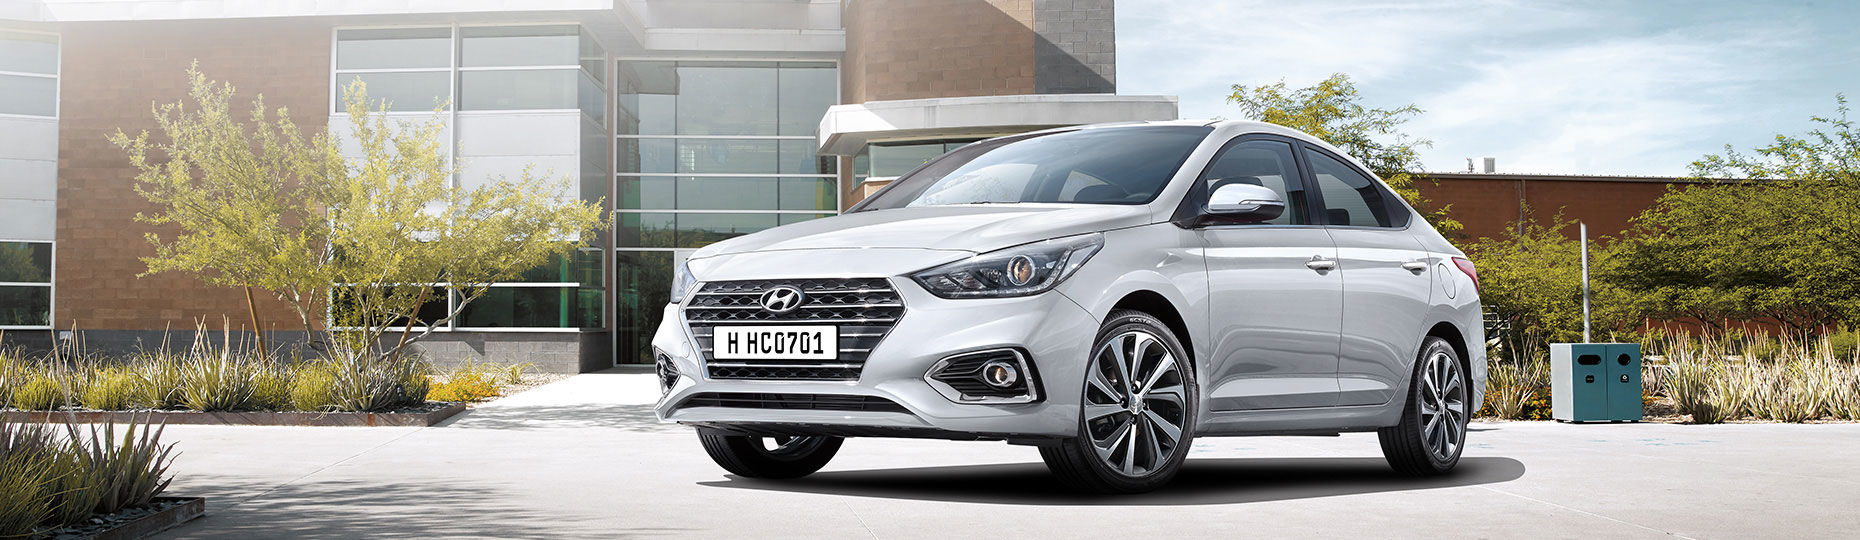 Hyundai представила автомобильную краску, устраняющую царапины за два часа